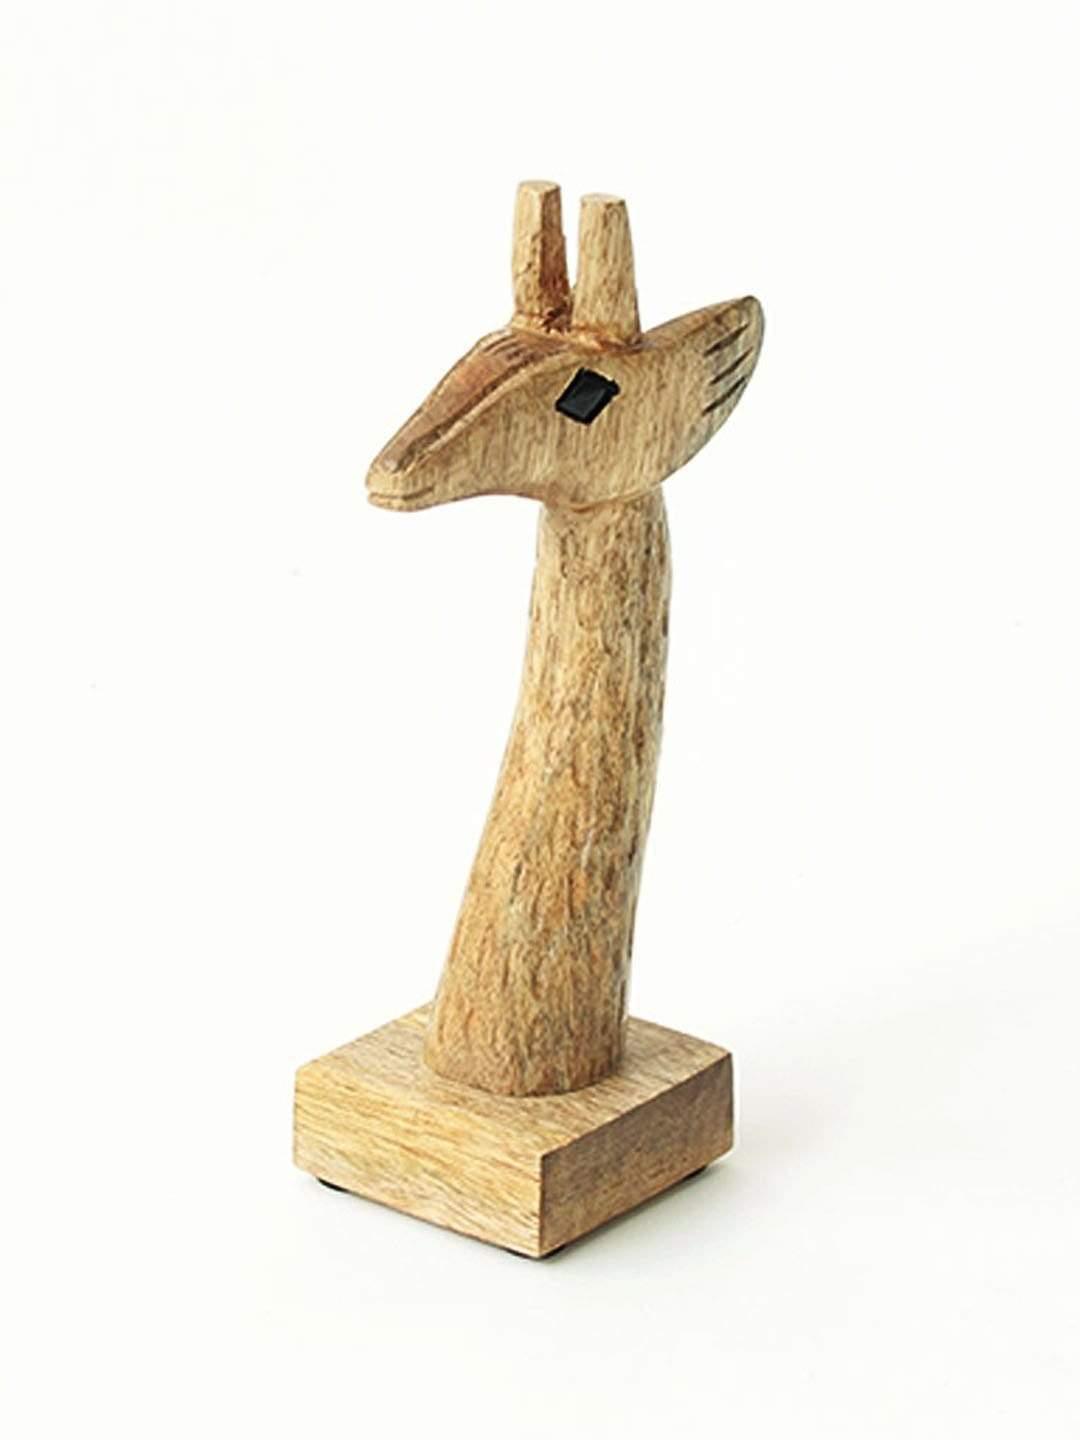 Mr. Giraffe Glasses Holder - The Wishing Chair